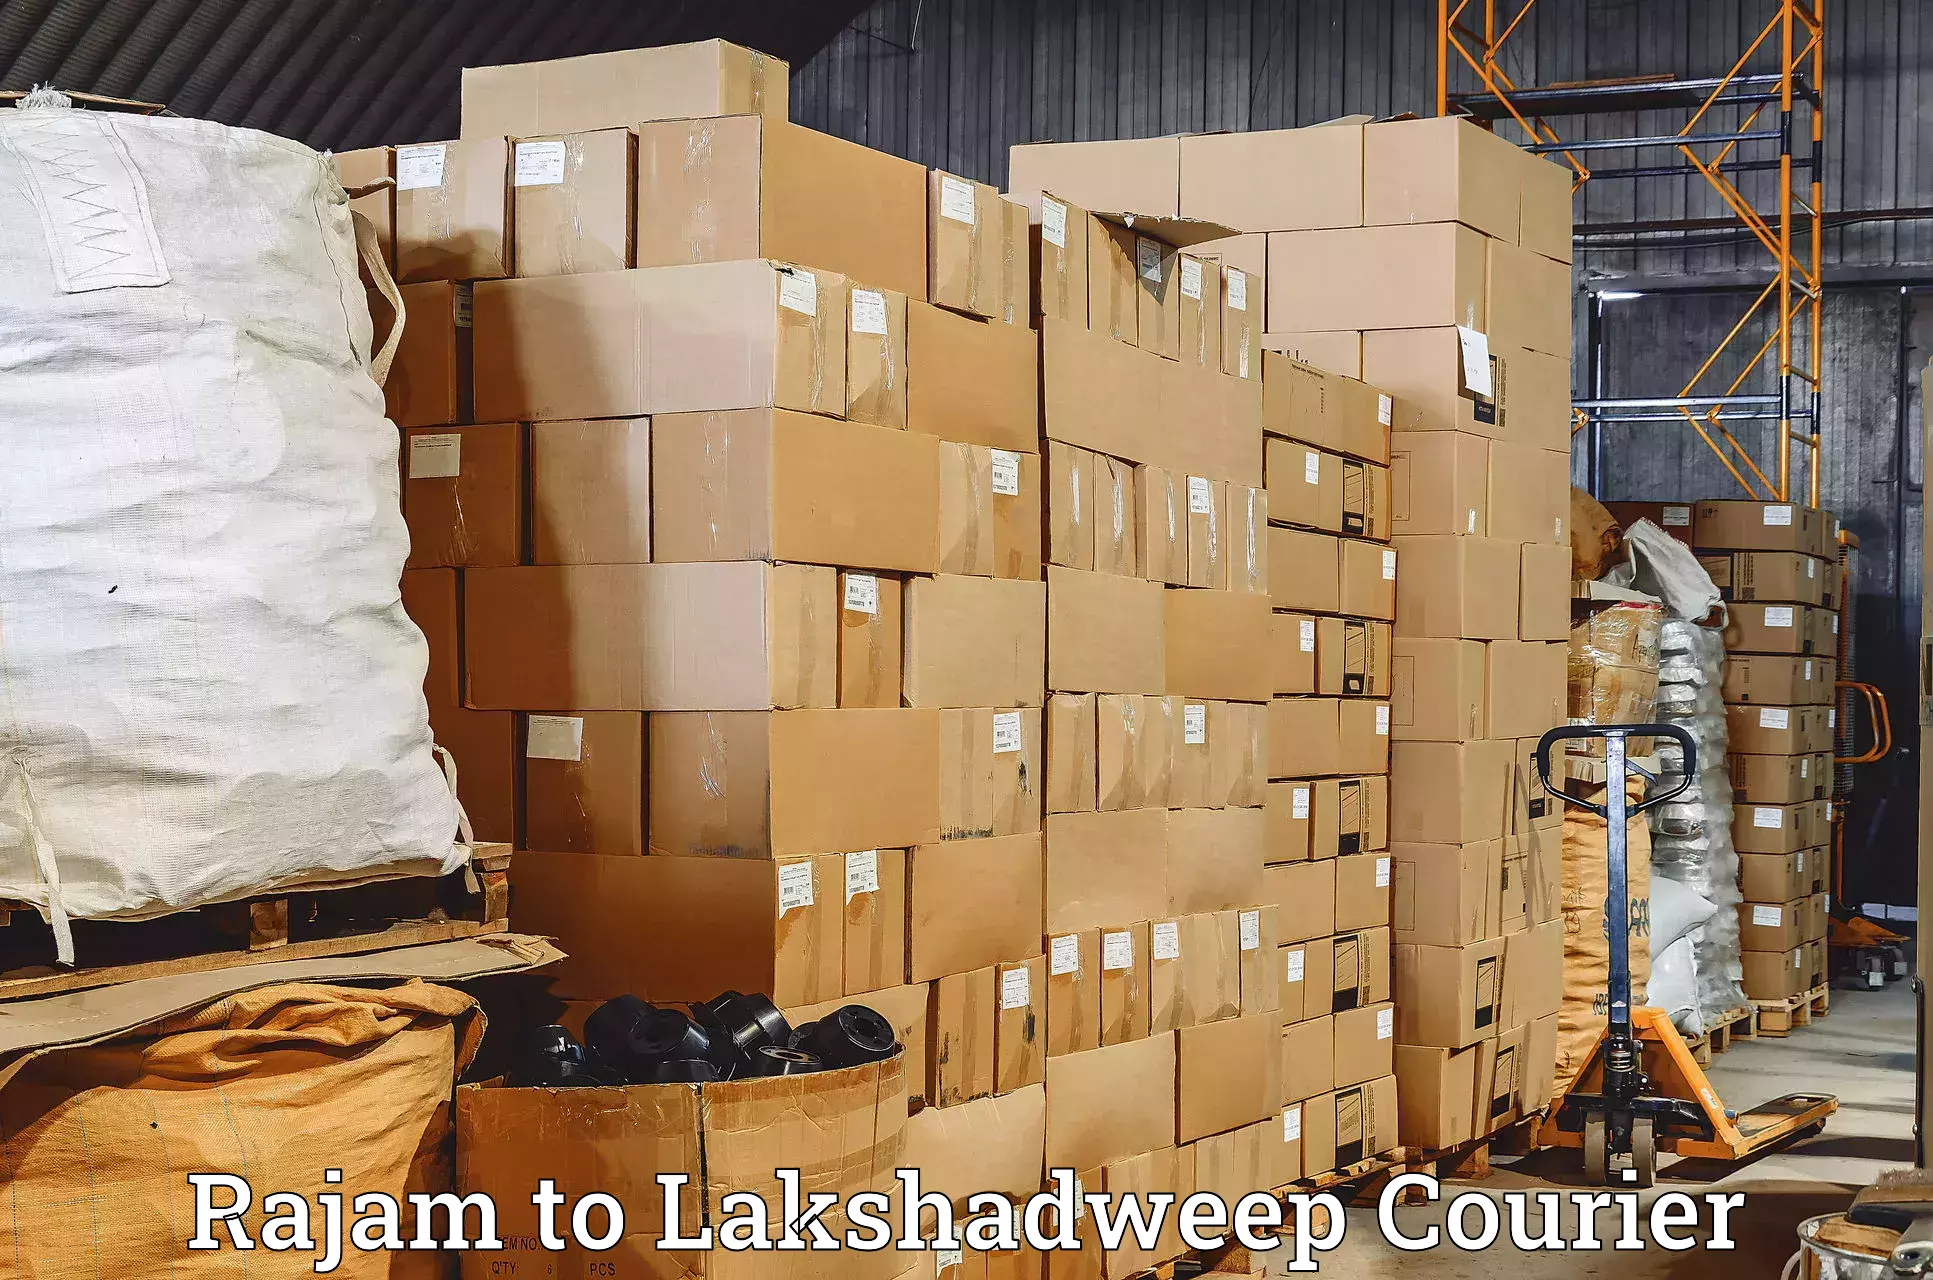 Weekend courier service Rajam to Lakshadweep